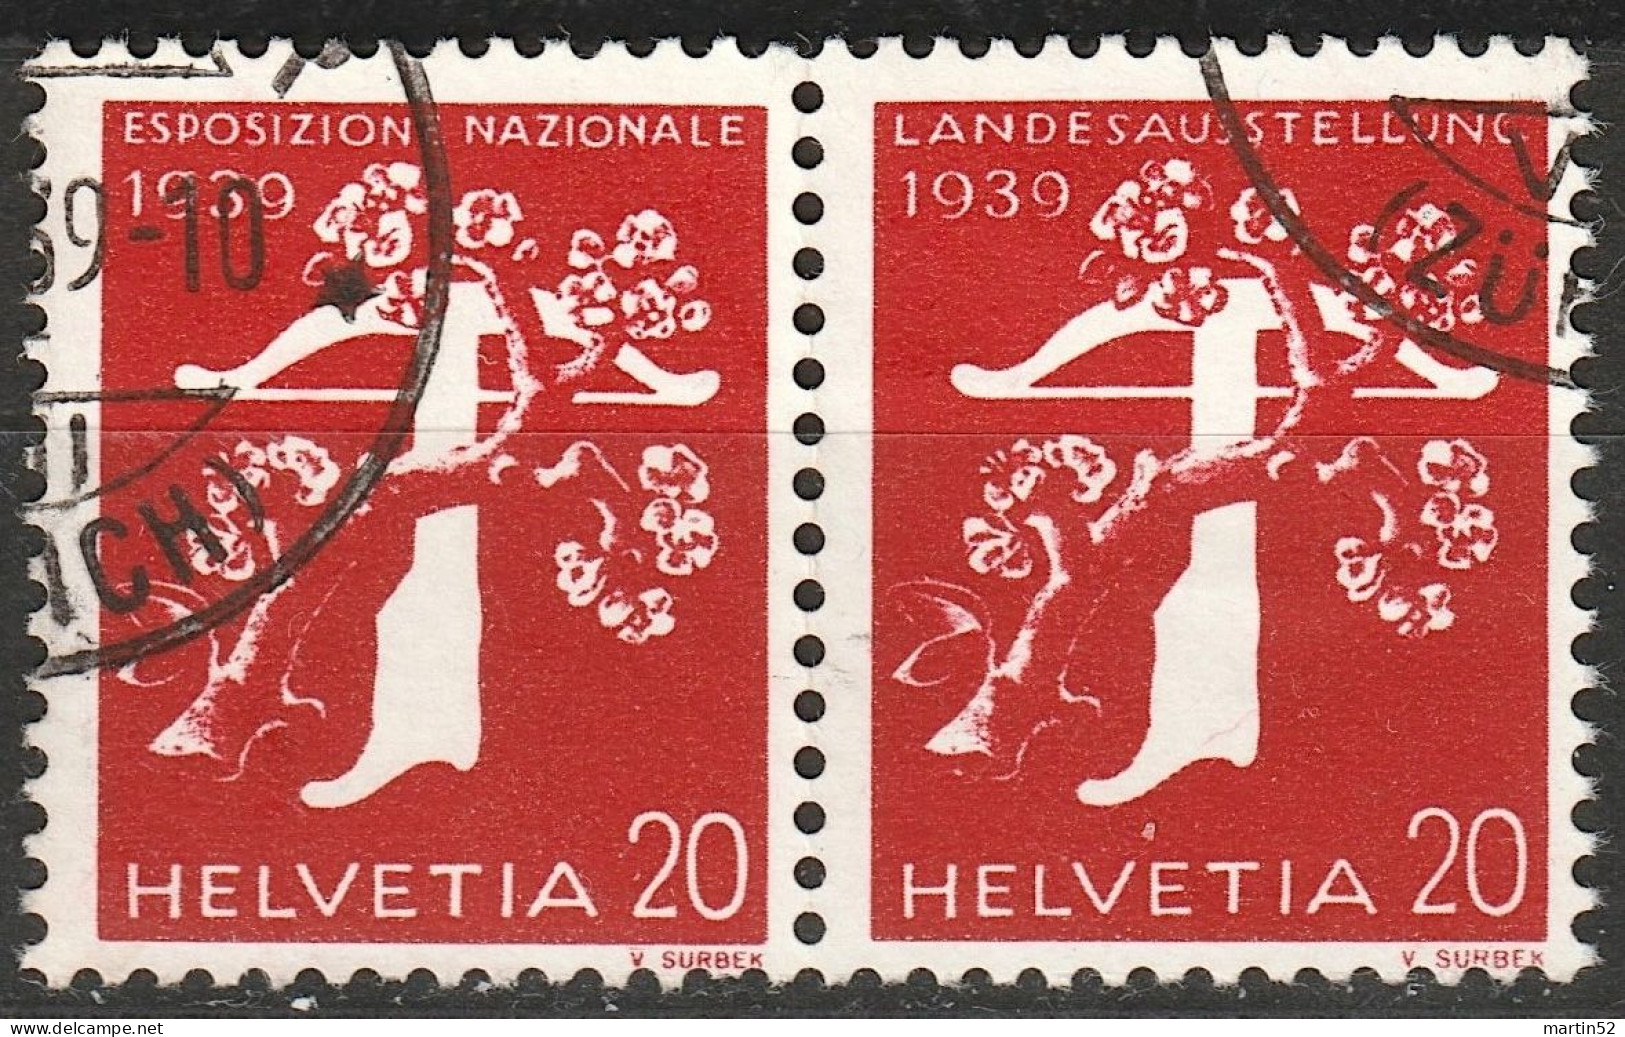 Schweiz Suisse 1939: Rollenpaar Zu Z27f = 230yR.01+238yR Mi W23 = 346yR+354y Mit N° P0930 ⊙.39 (ZÜRICH) (Zu CHF 140.00) - Rollen